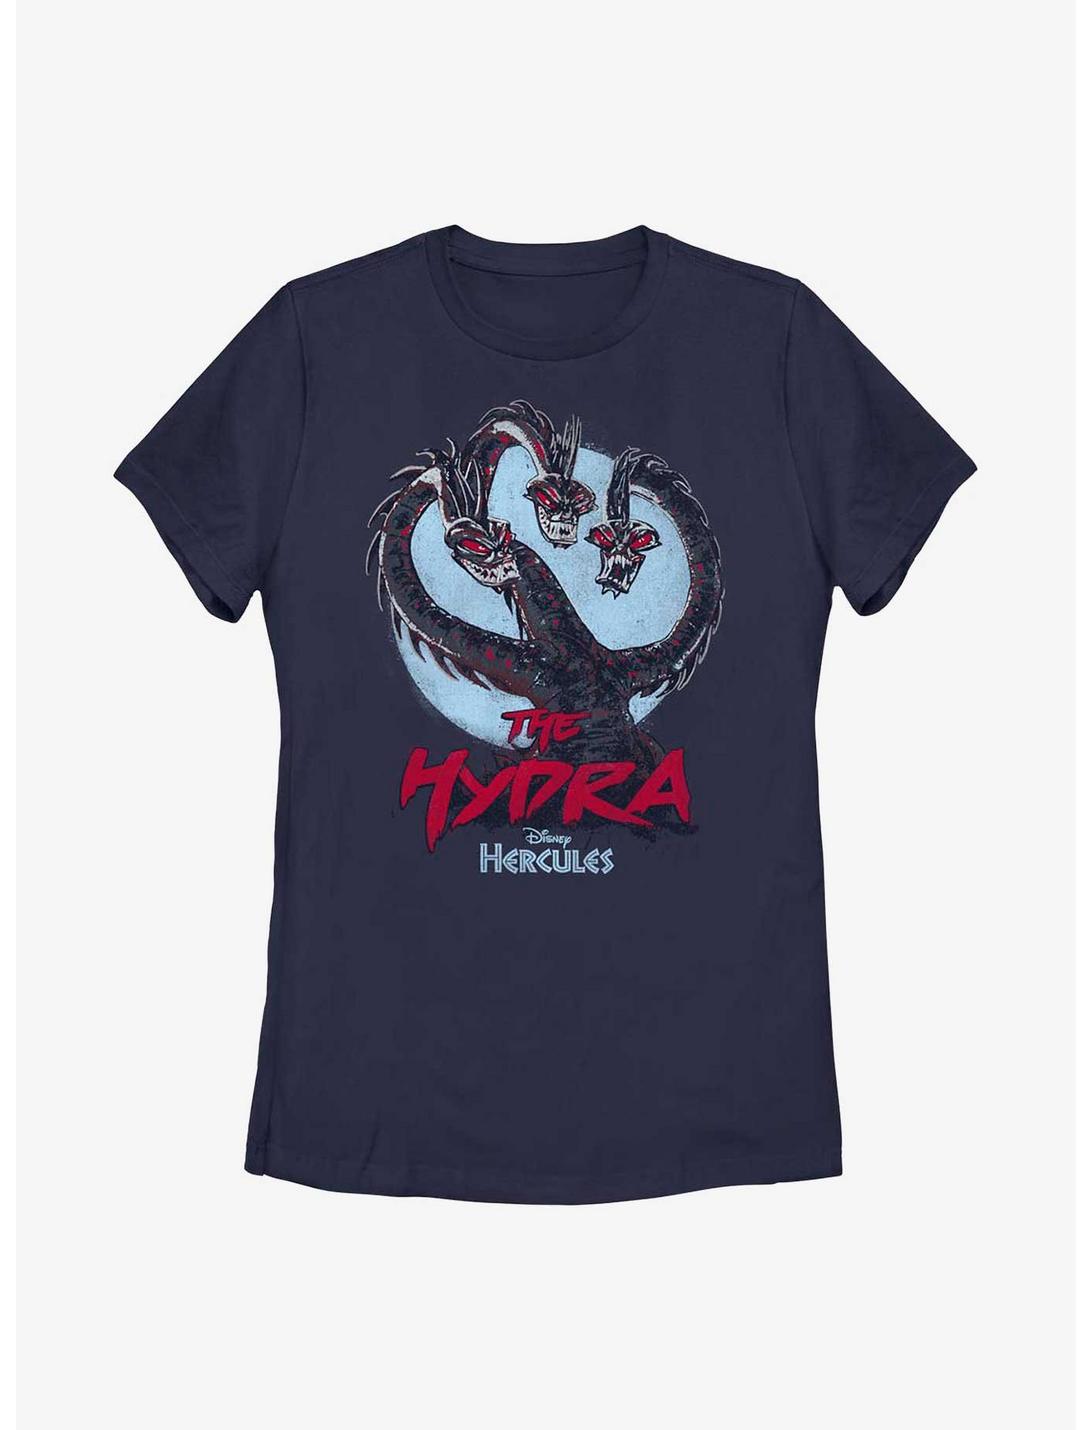 Disney Hercules The Hydra Womens T-Shirt, NAVY, hi-res